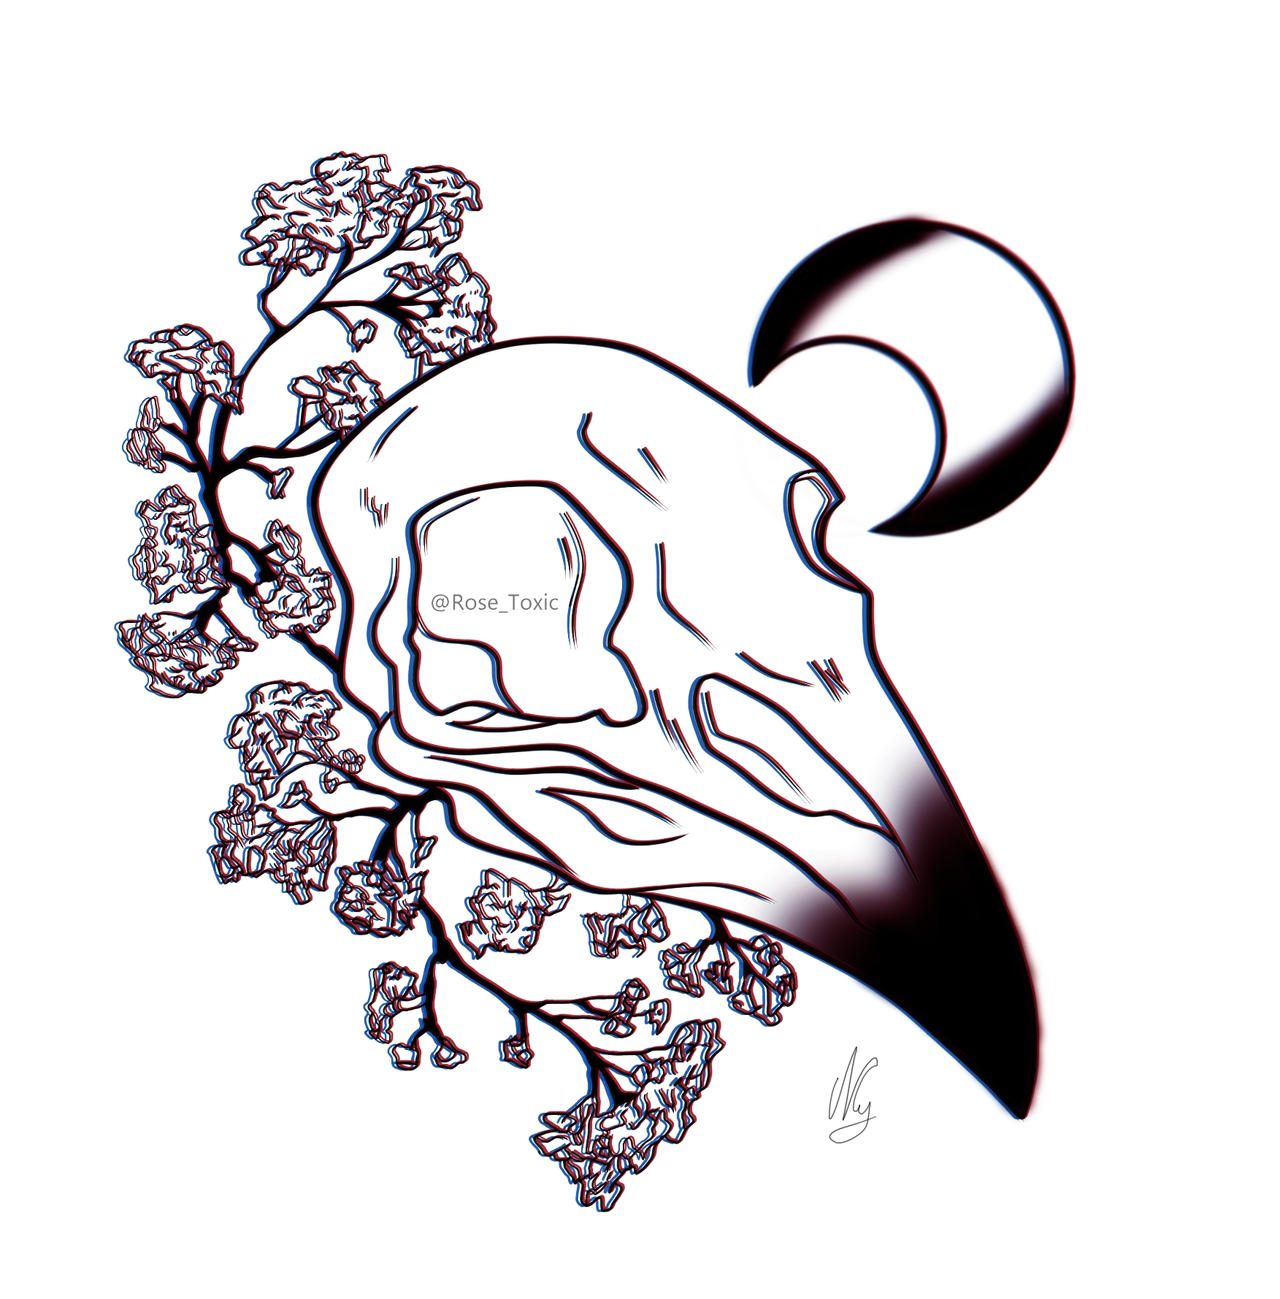 Crow Skull Tattoo Design - Rose by RoseToxicTattoos on DeviantArt